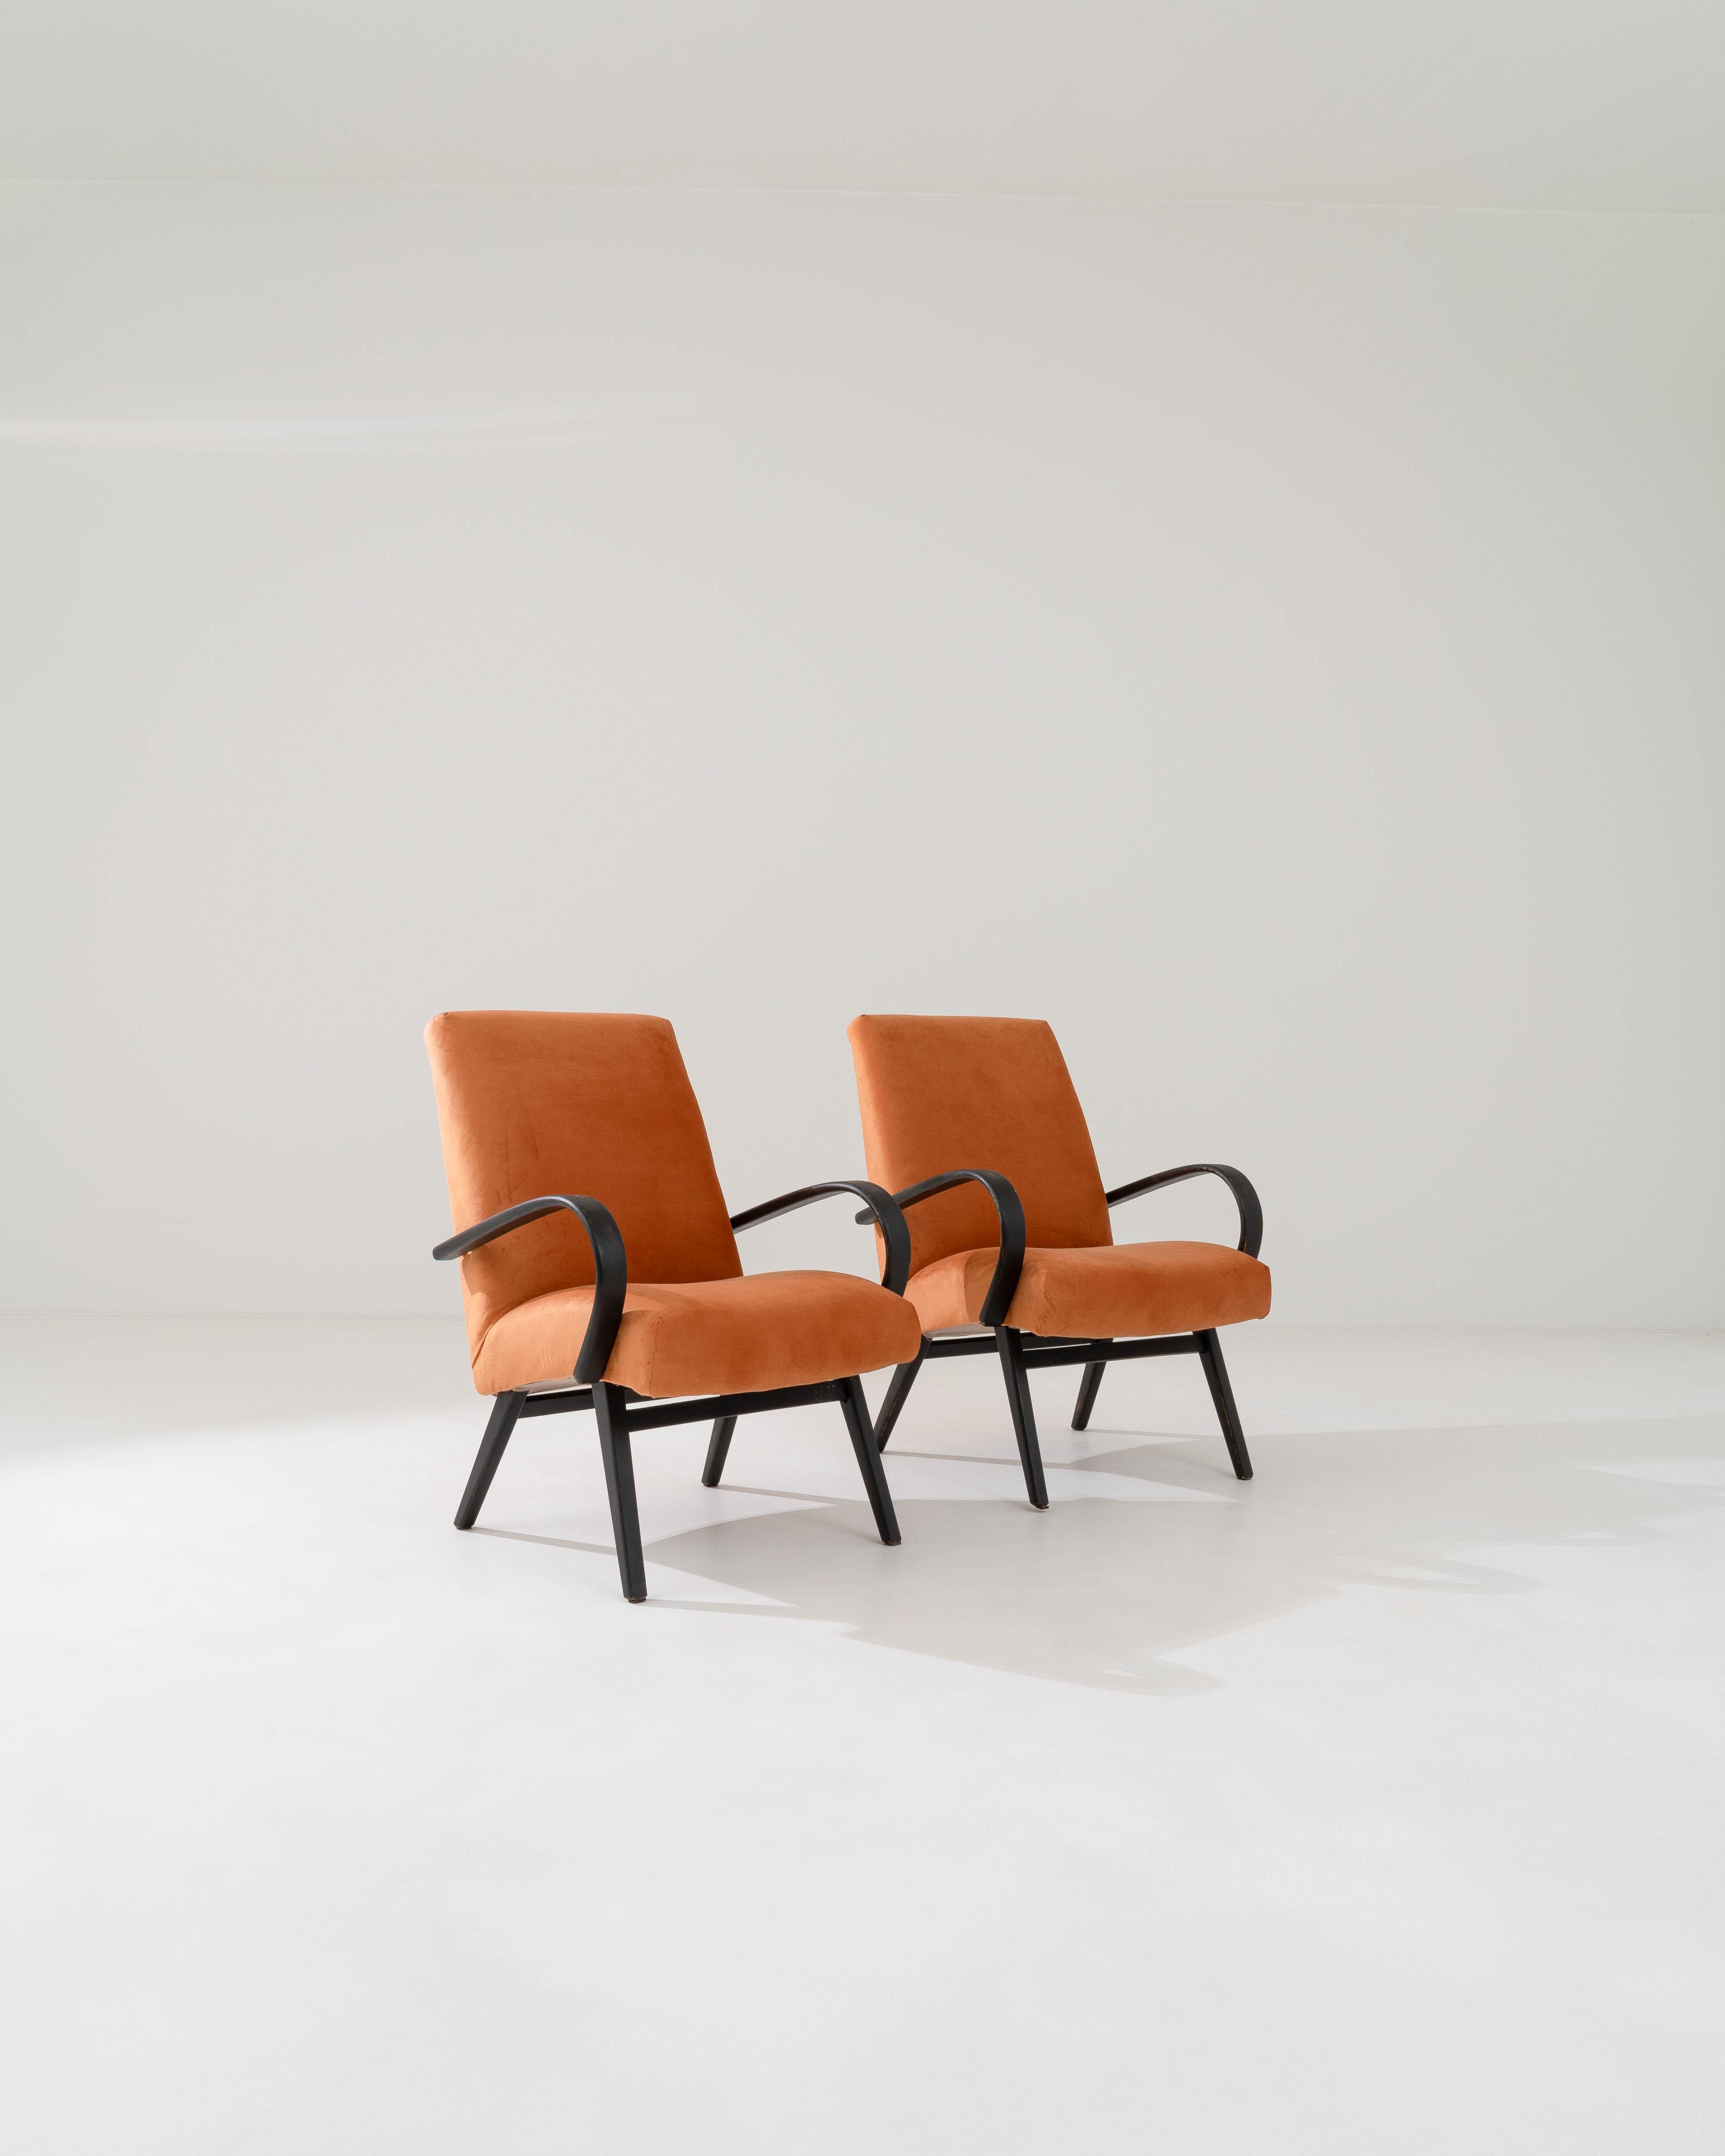 Fabriquée dans l'ancienne Tchécoslovaquie, cette paire de fauteuils en bois courbé datant d'environ 1950 a été retapissée avec un tissu neutre actualisé. Le revêtement velouté a été choisi pour compléter l'élégance vintage du cadre en bois dur noir,